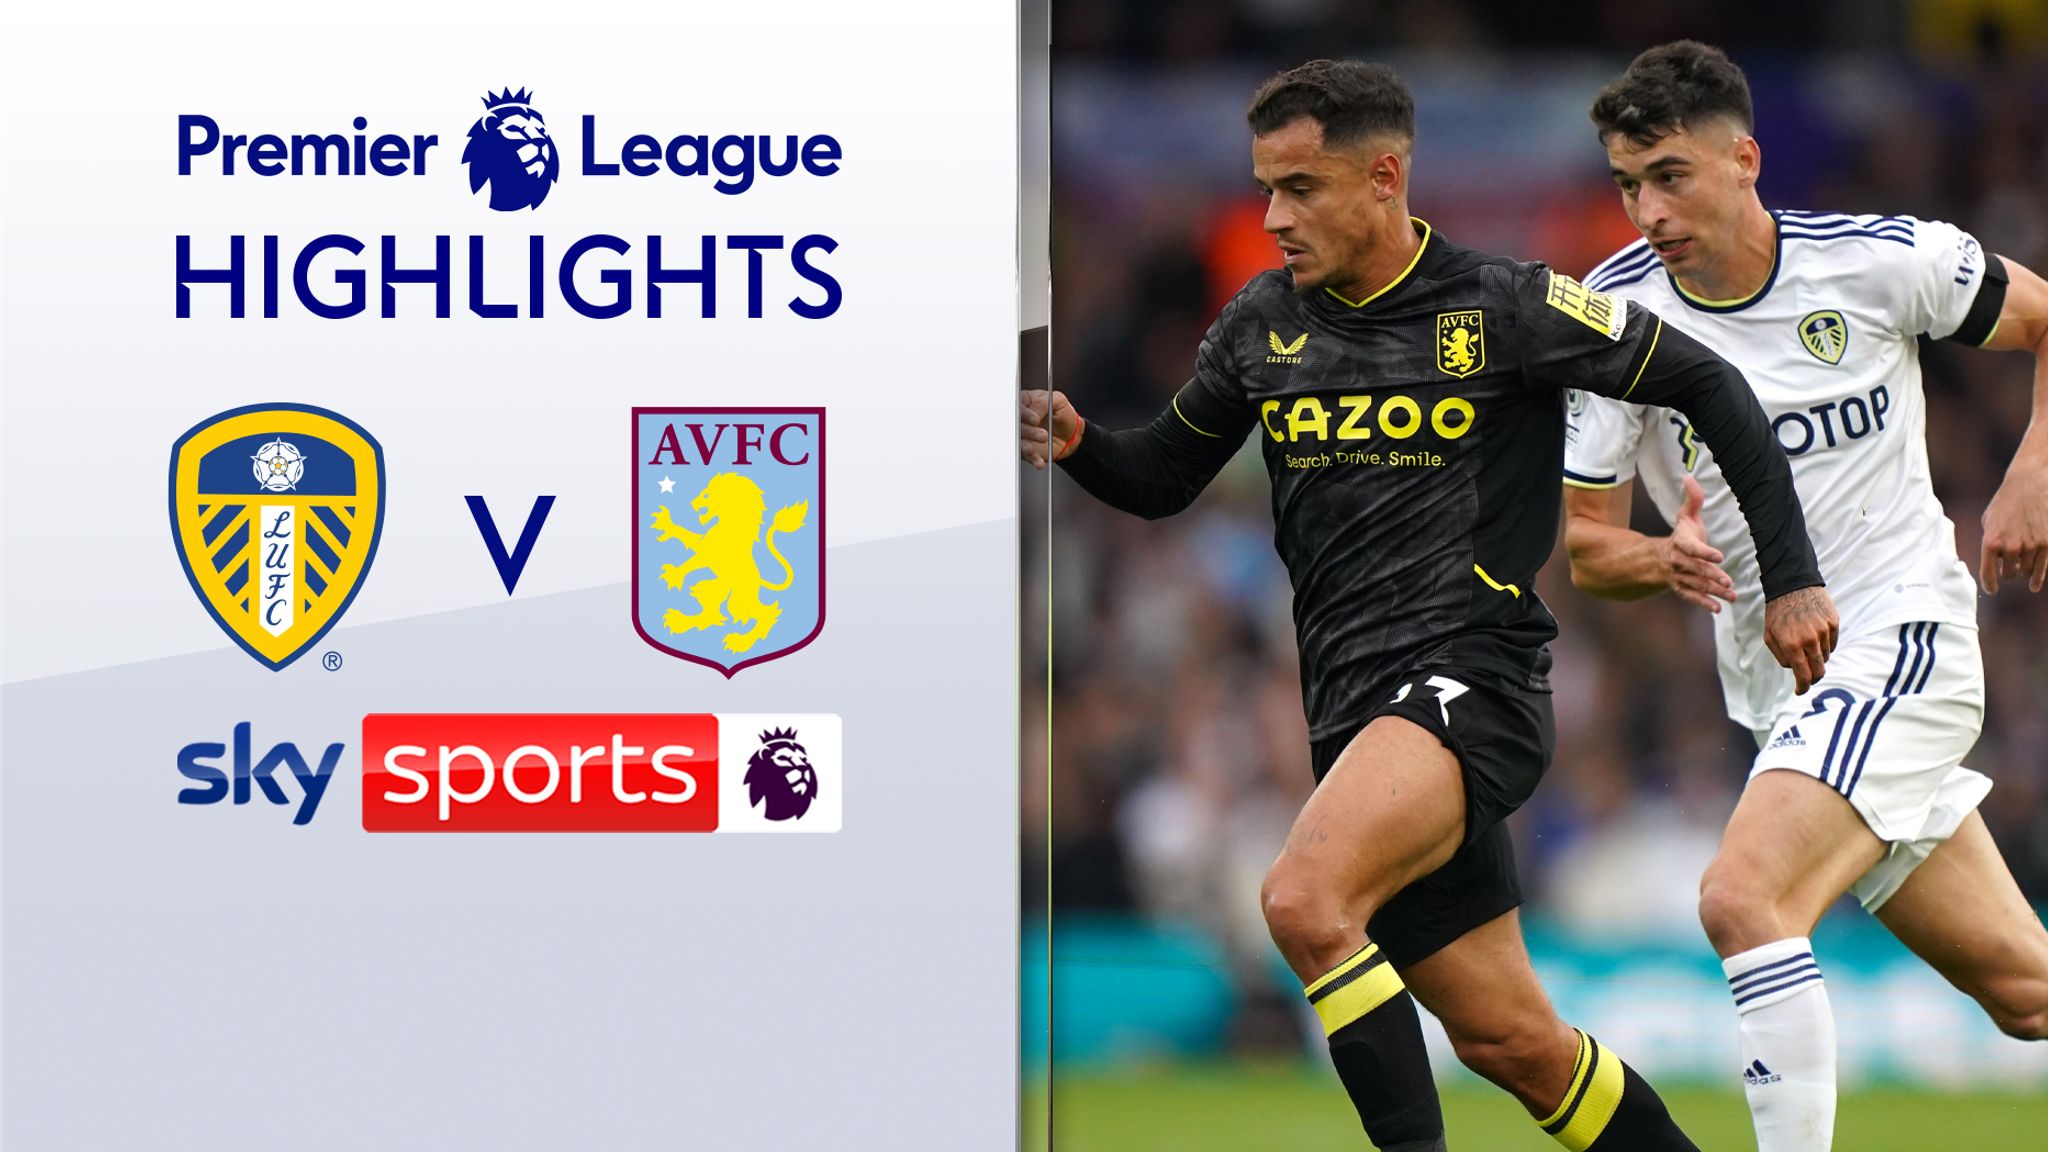 Leeds 0-0 Aston Villa Premier League Highlights Video Watch TV Show Sky Sports